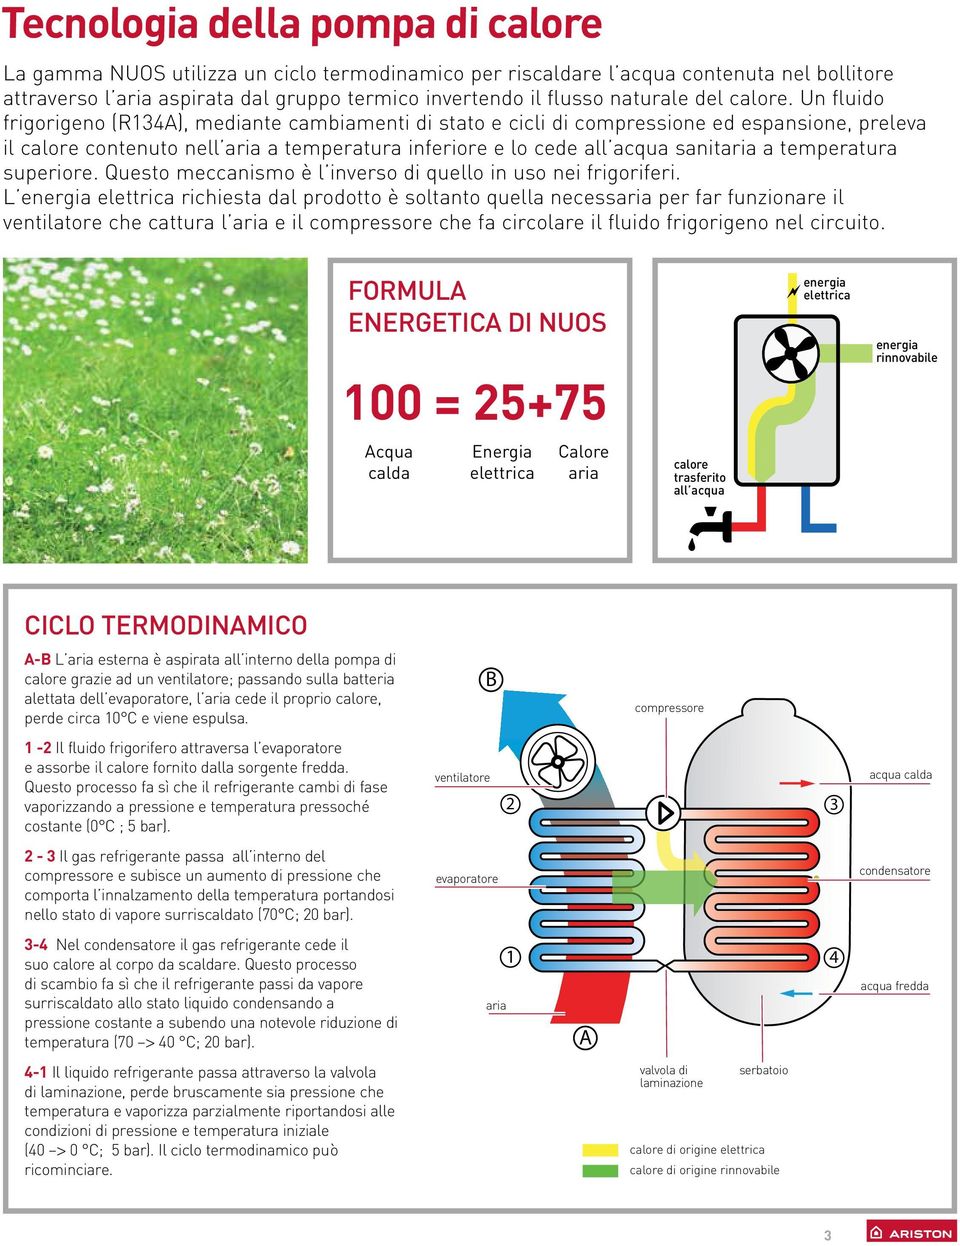 Un fluido frigorigeno (R134A), mediante cambiamenti di stato e cicli di compressione ed espansione, preleva il calore contenuto nell aria a temperatura inferiore e lo cede all acqua sanitaria a